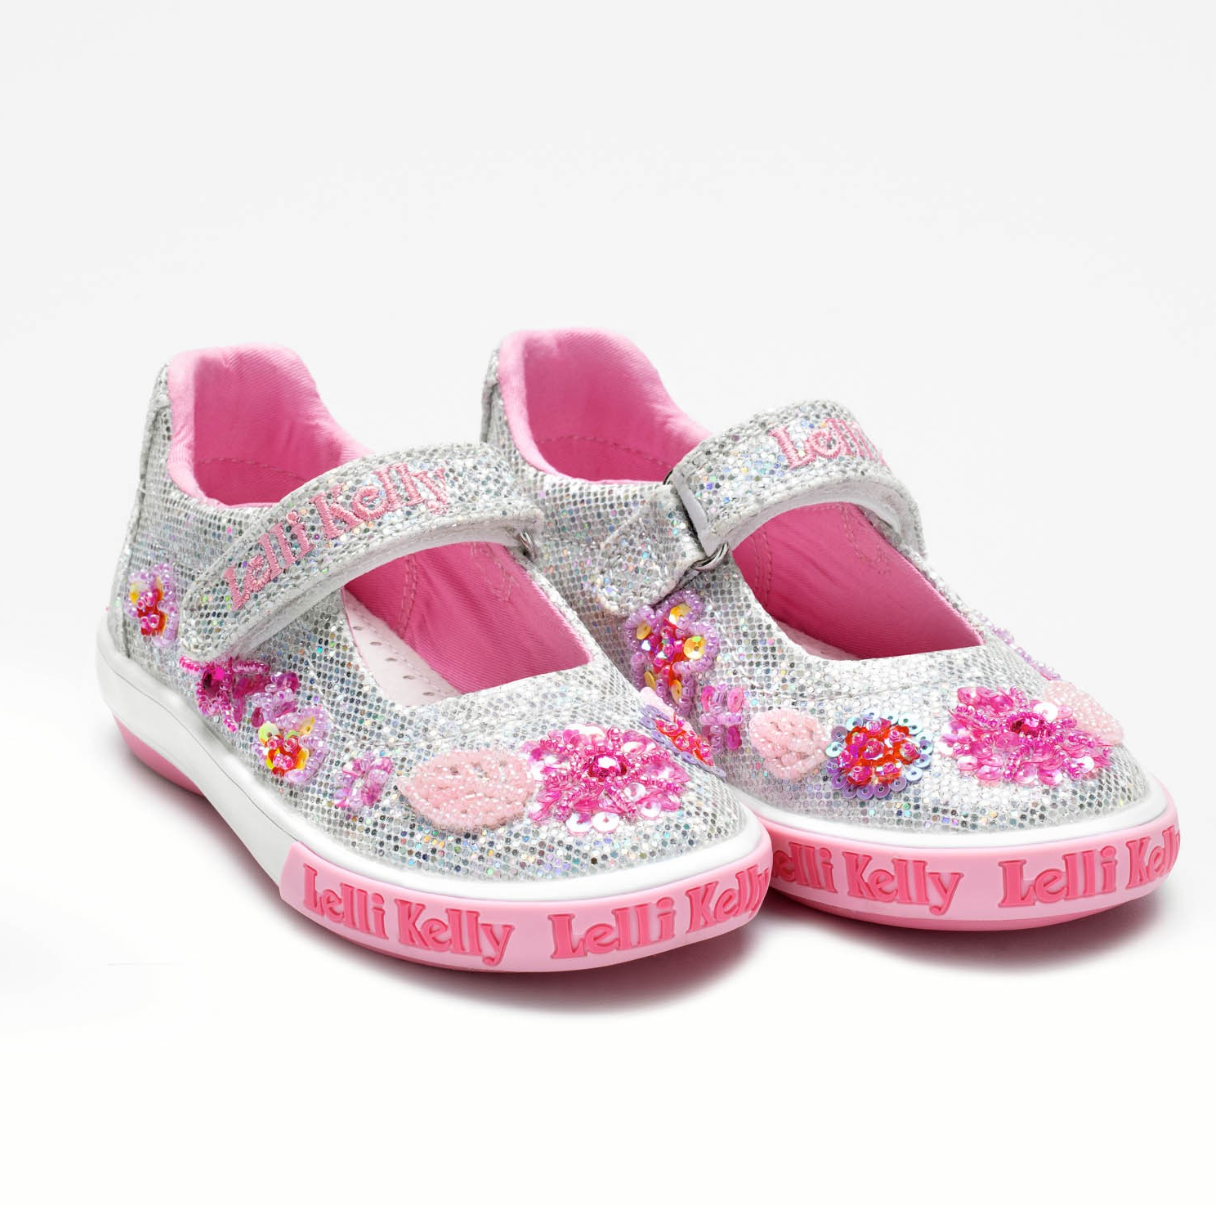 lelli kelly flower girl shoes